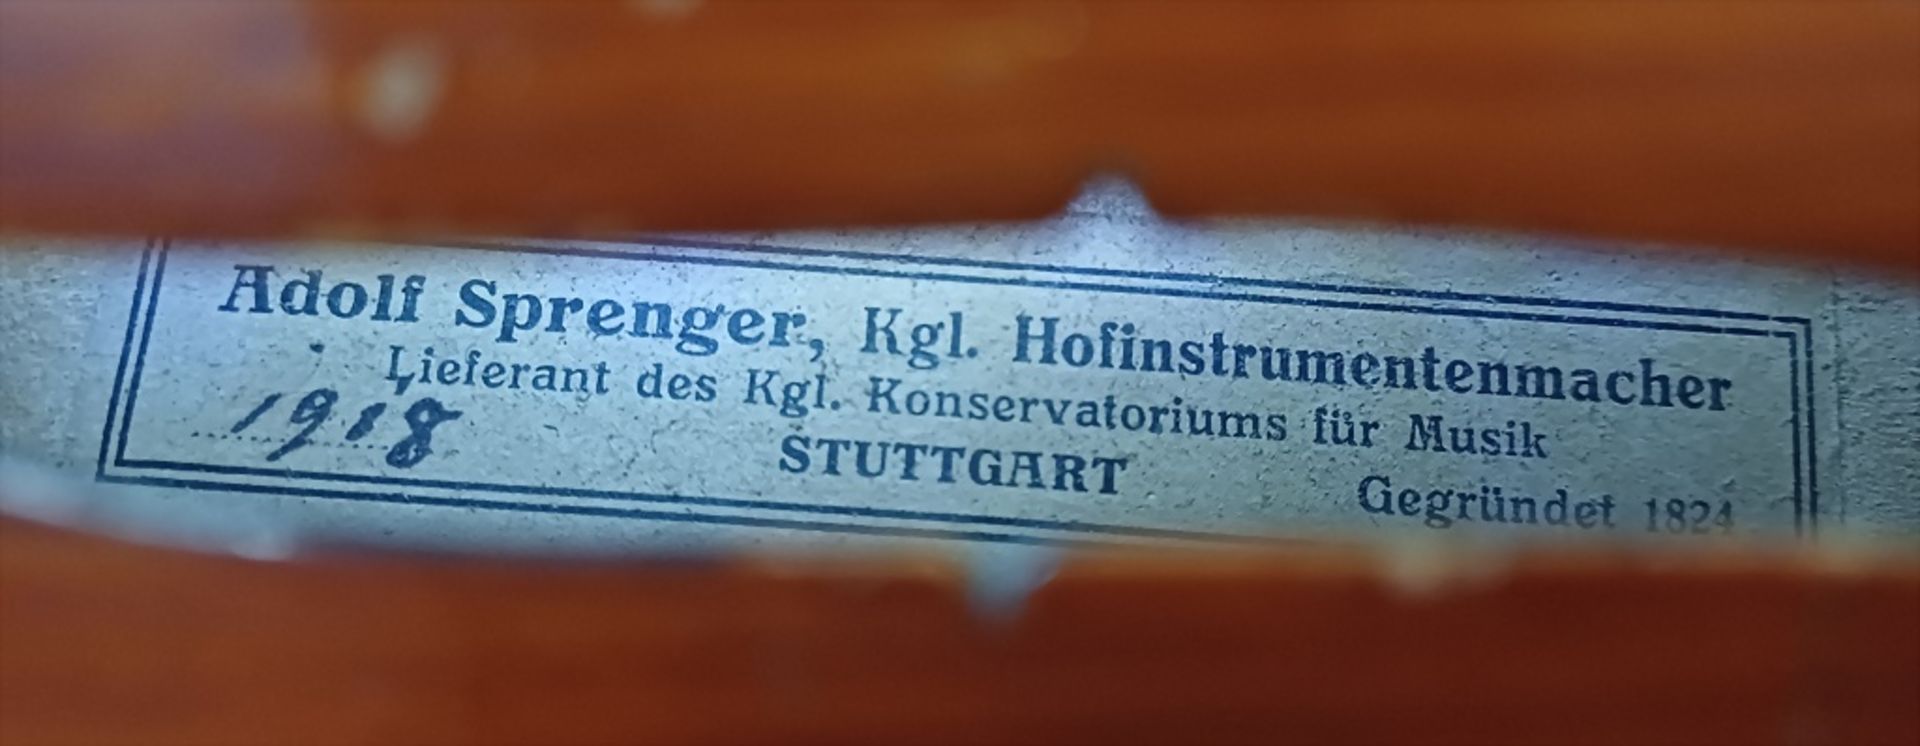 Violine / A violin, deutsch, Adolf Sprenger, Stuttgart, 1918 - Bild 8 aus 8